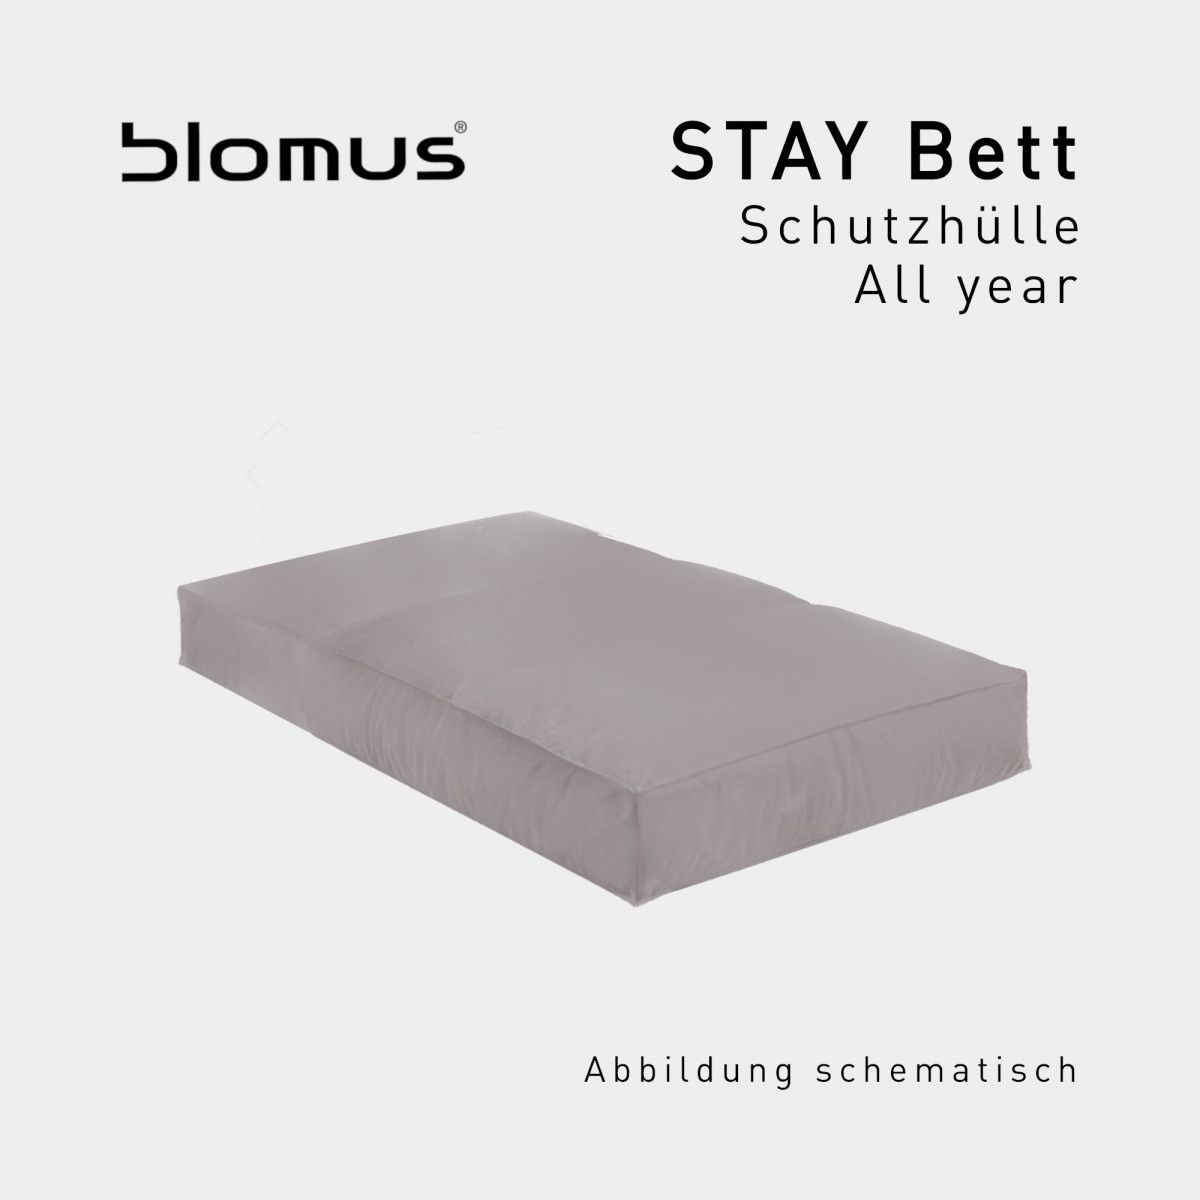 Blomus Schutzhülle All Year für Stay Bett online kaufen | Zawoh